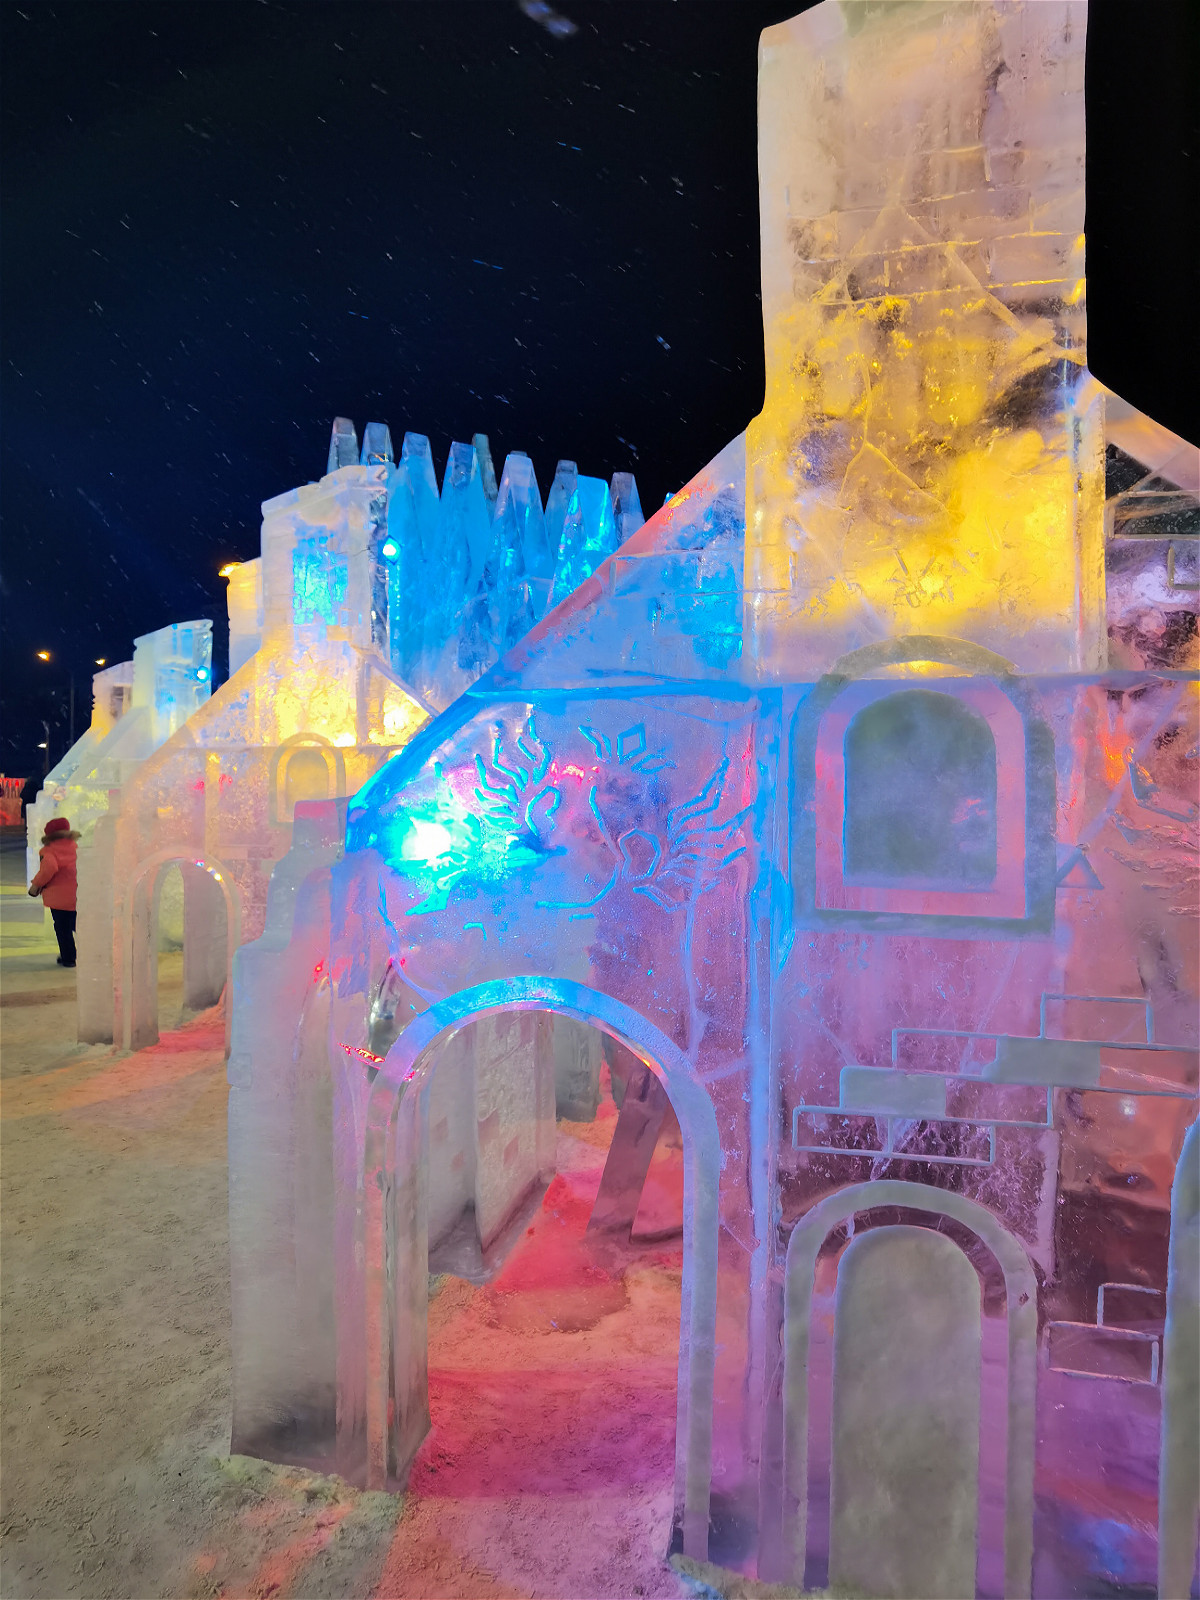 детский ледяной городок подсвеченный разными цветами